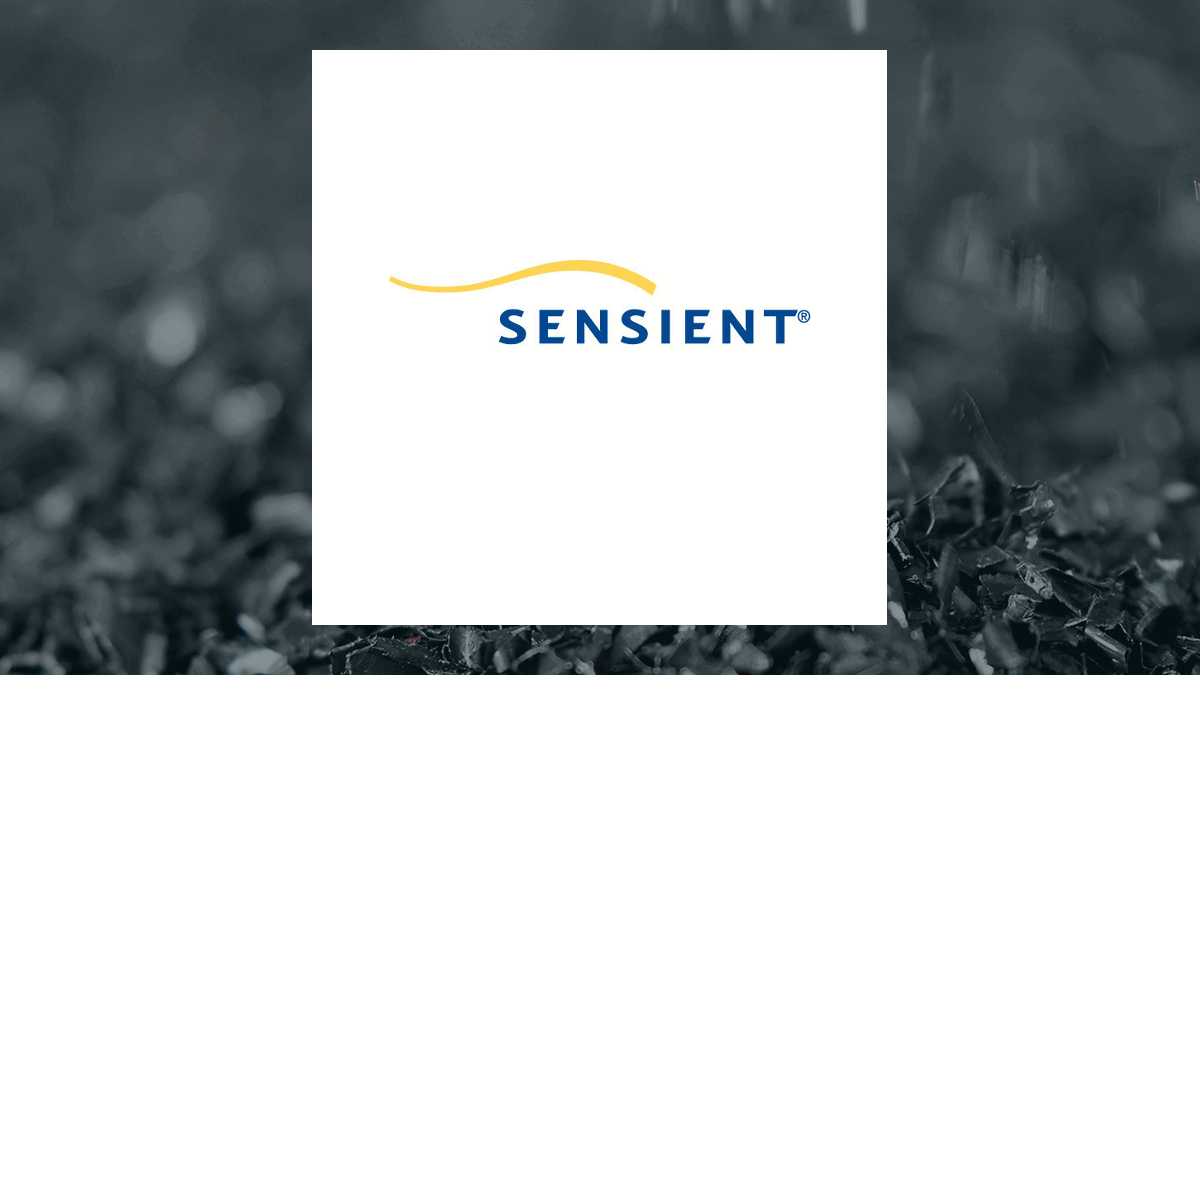 Sensient Technologies Co. (NYSE:SXT) Shares Sold by Handelsbanken Fonder AB